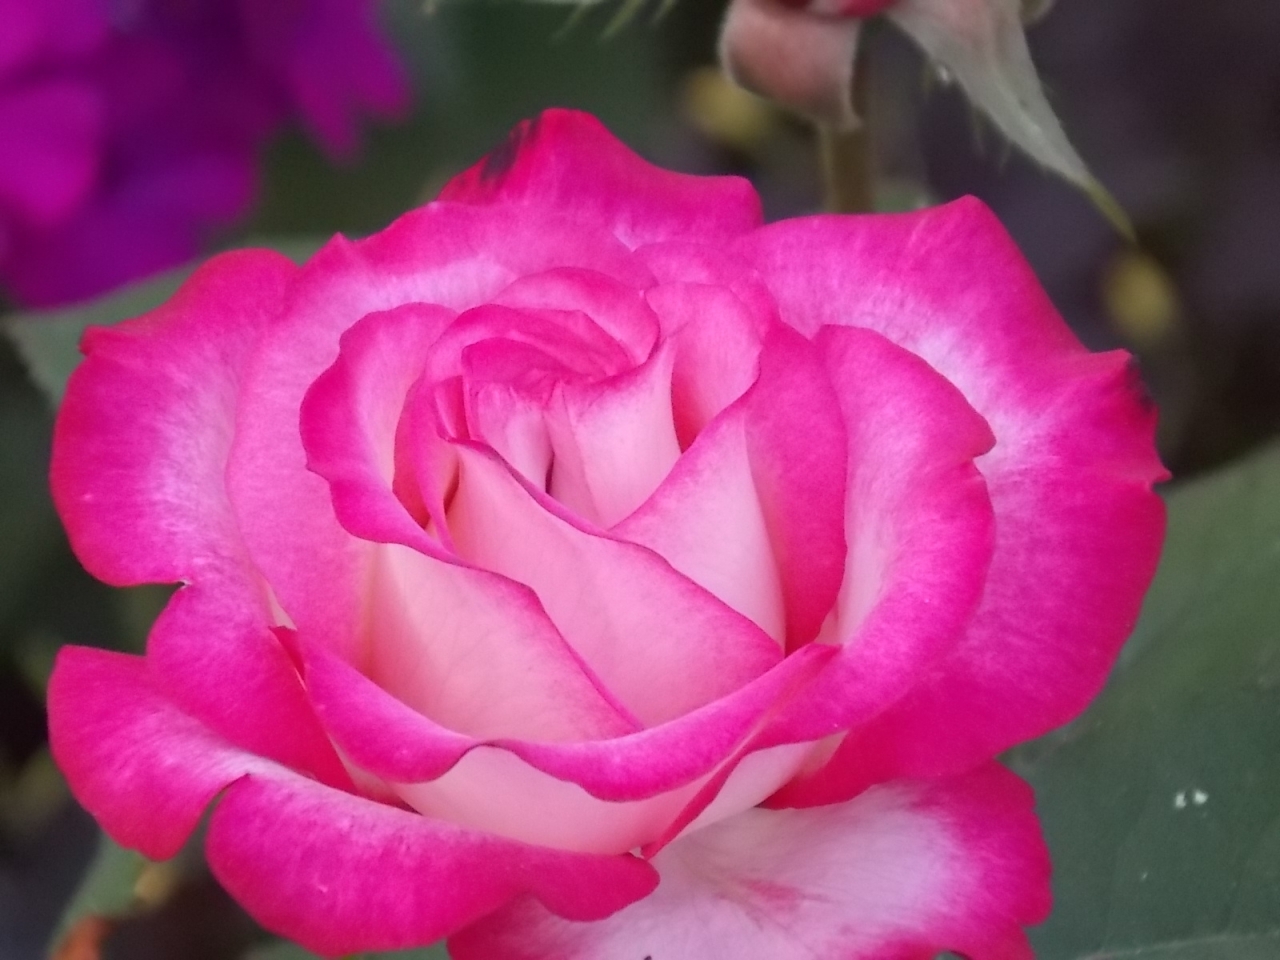 Мои любимчики. 16.12.2019 - Хайлендер. Одна из самых прекрасных роз.